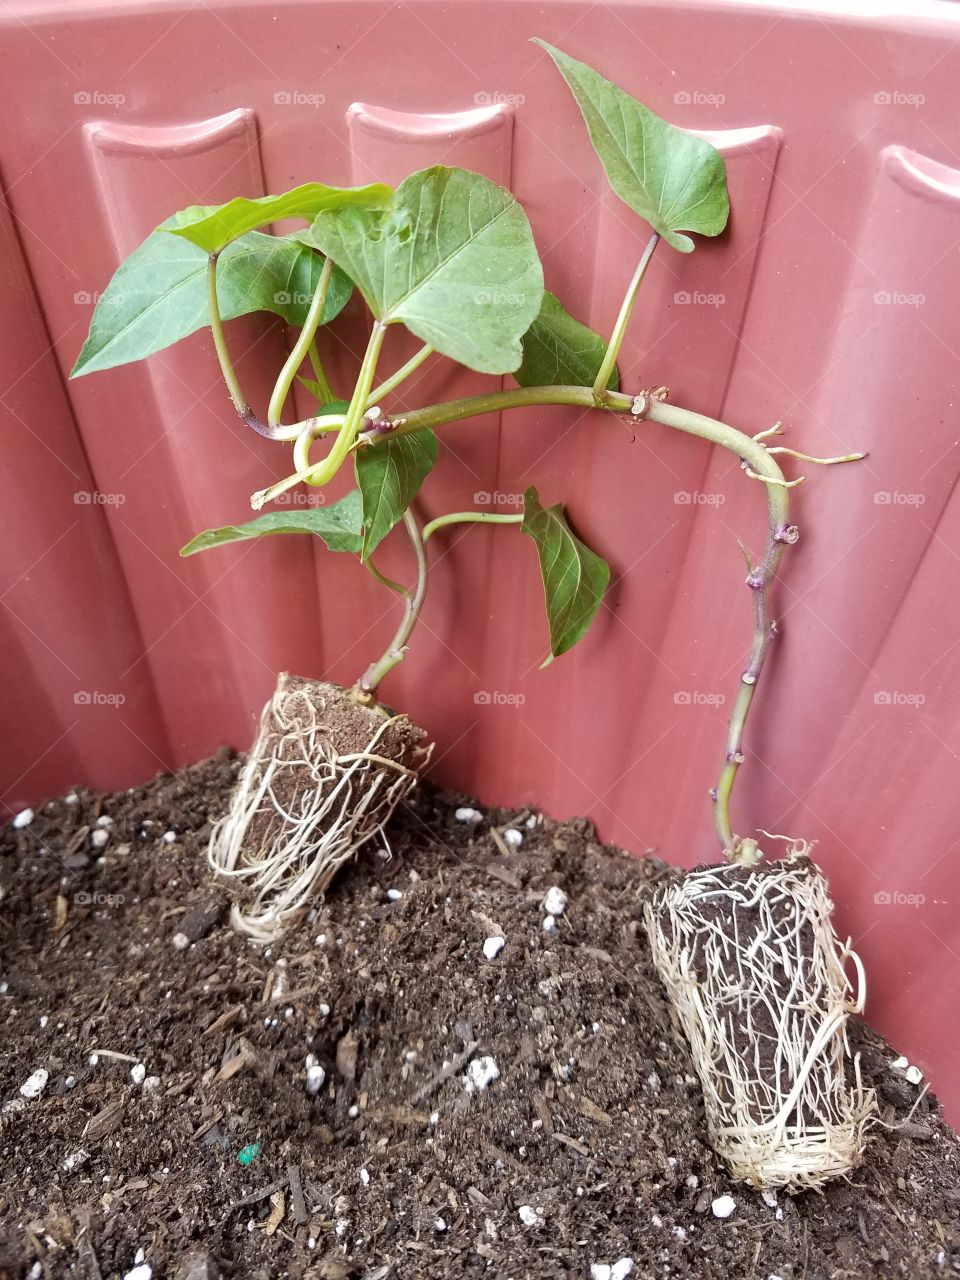 growing sweet potatoes